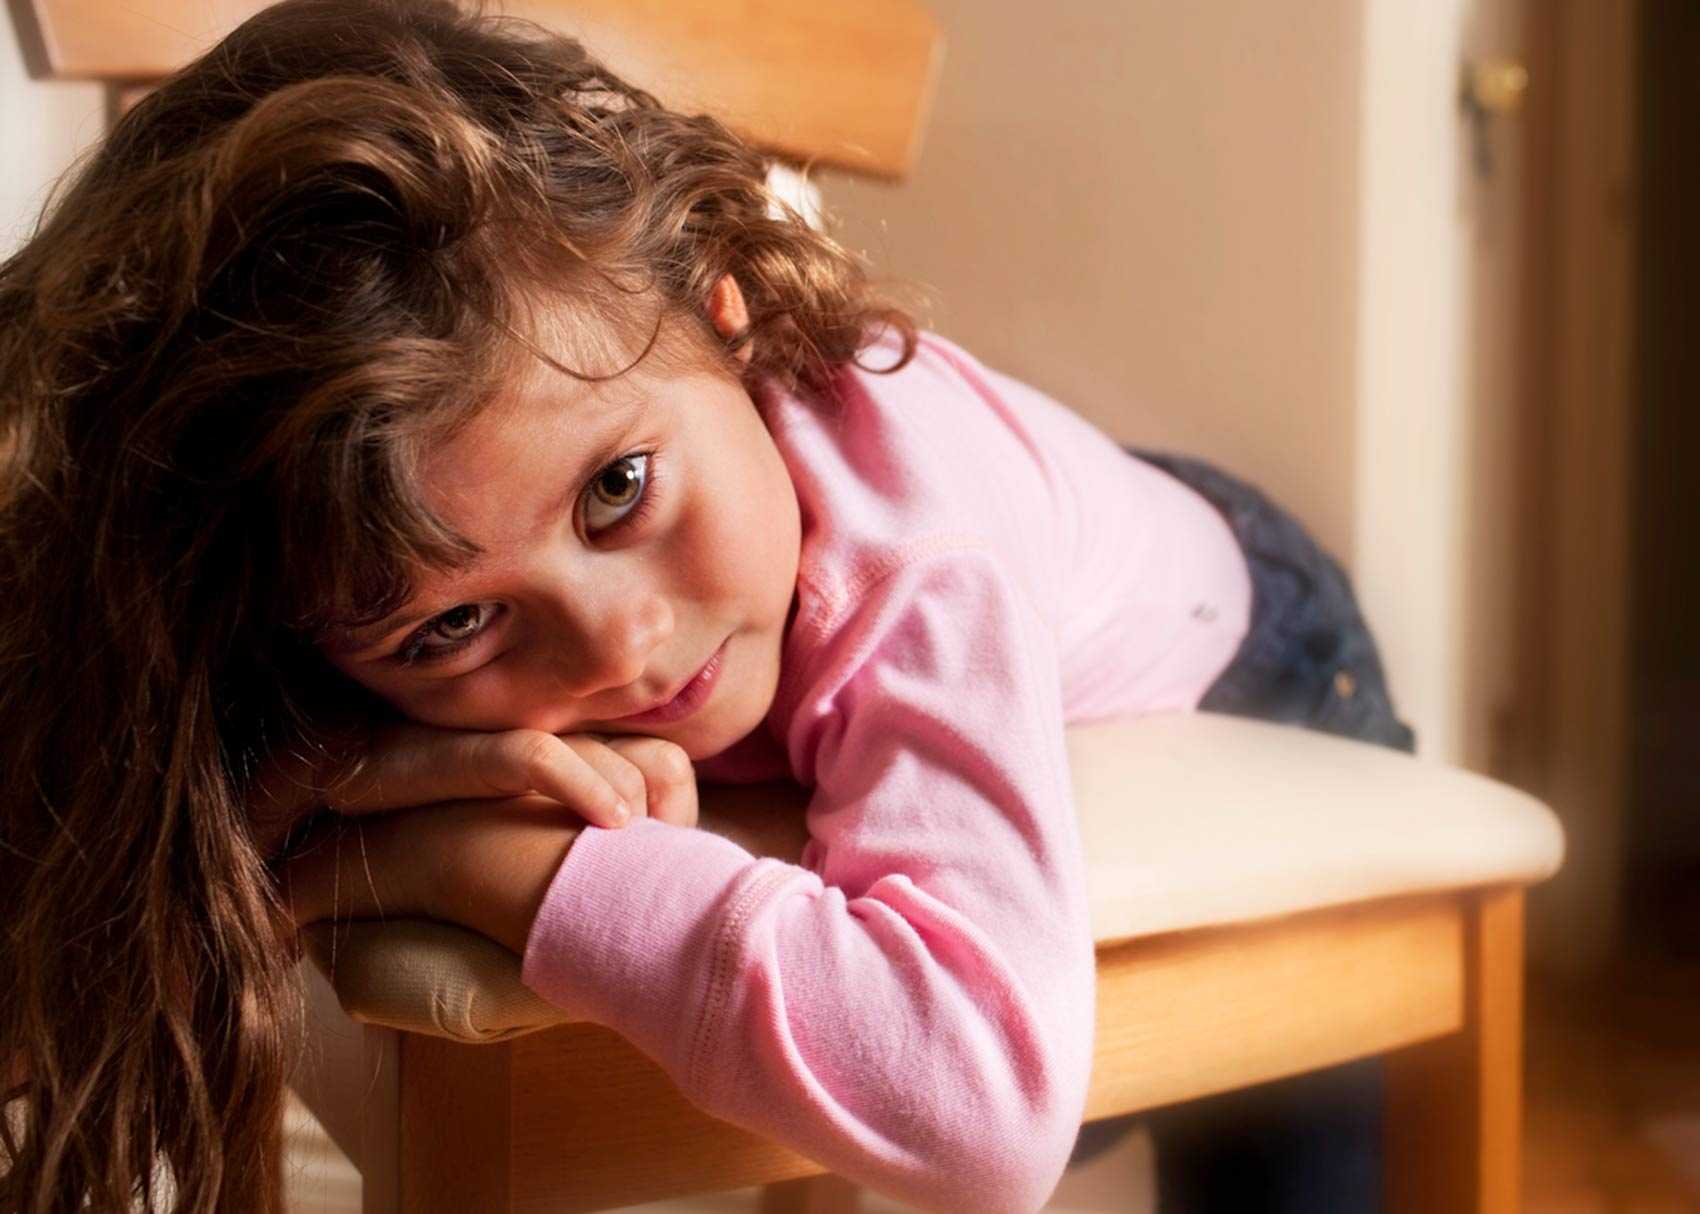 Неожиданное мнение: скука у детей не должна считаться проблемой, которую тут же надо устранять